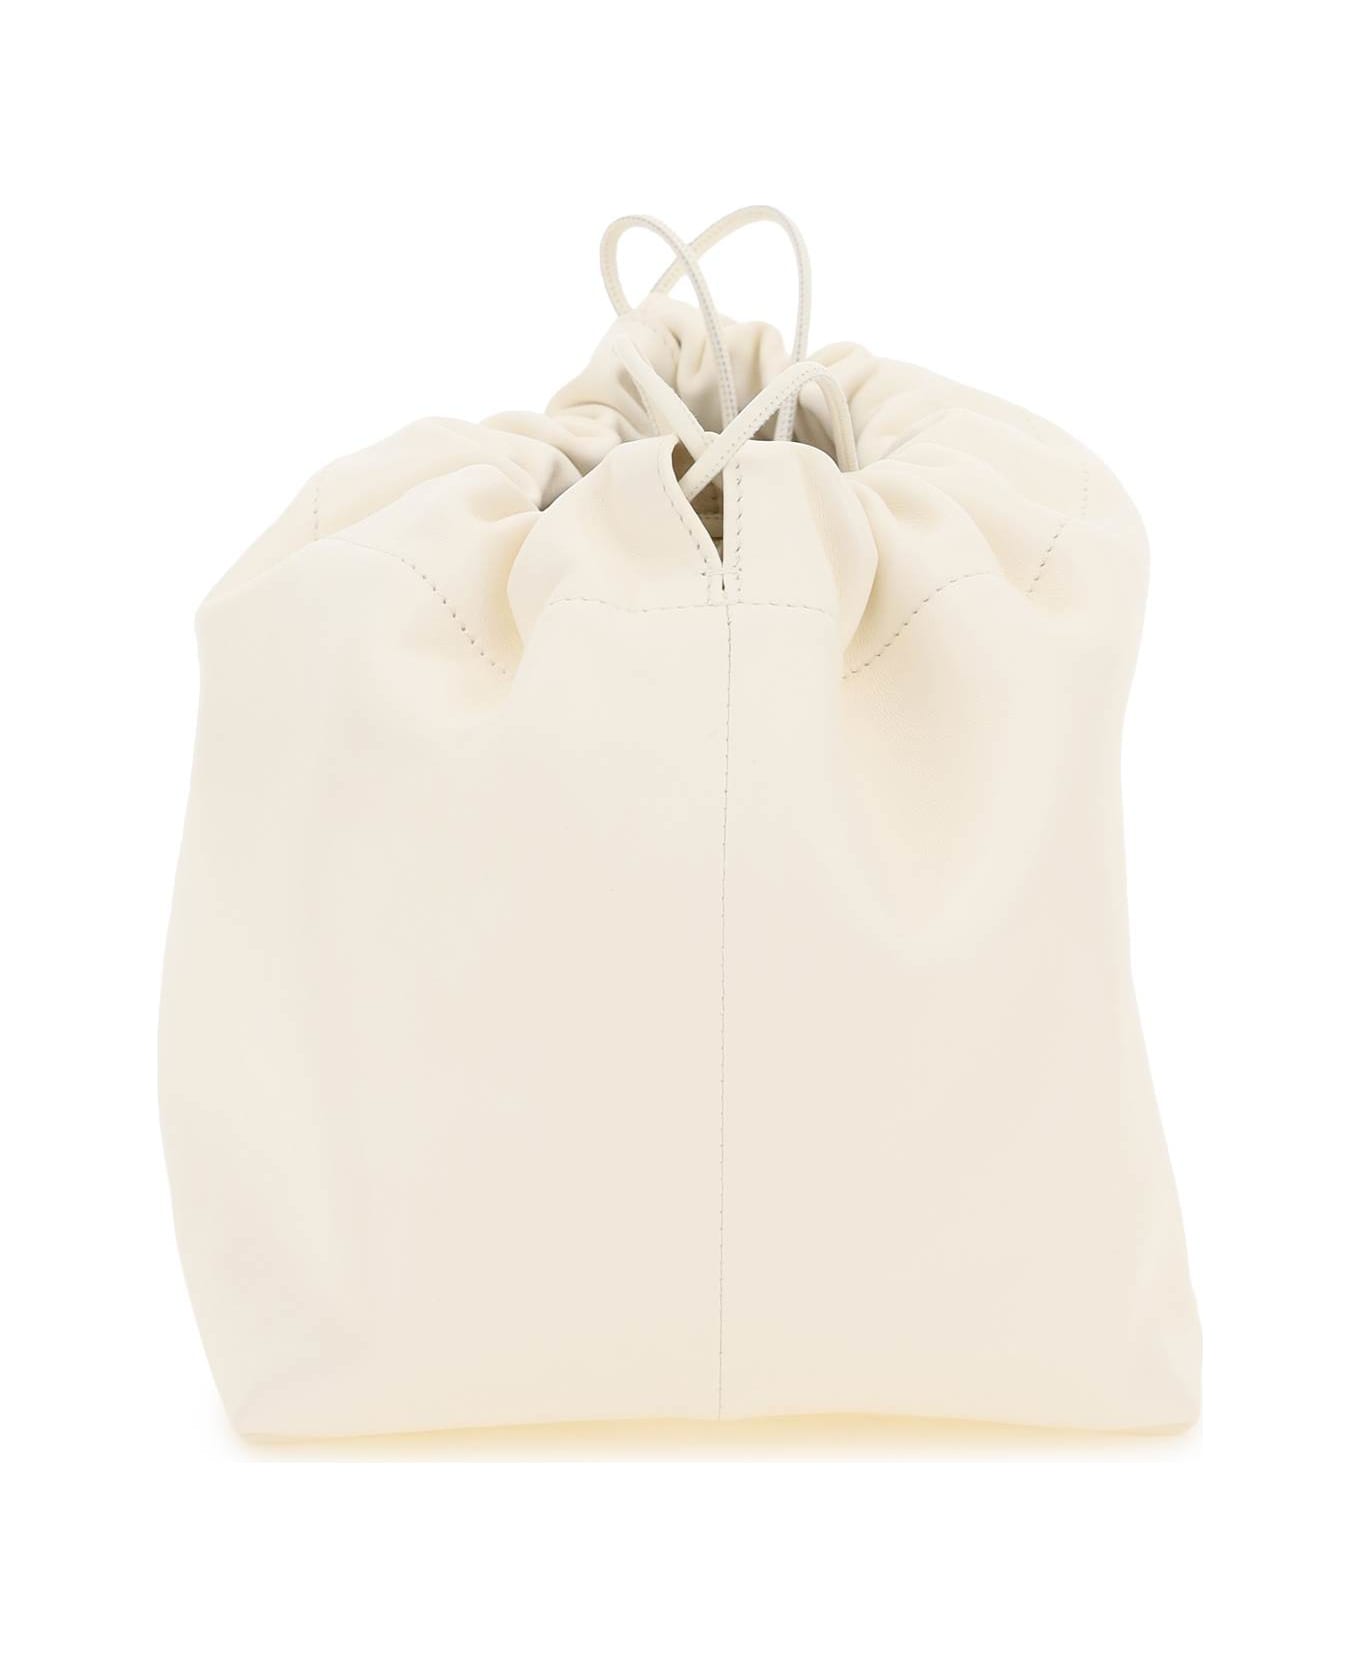 Jil Sander Dumpling Crossbody Bag - EGGSHELL (White)